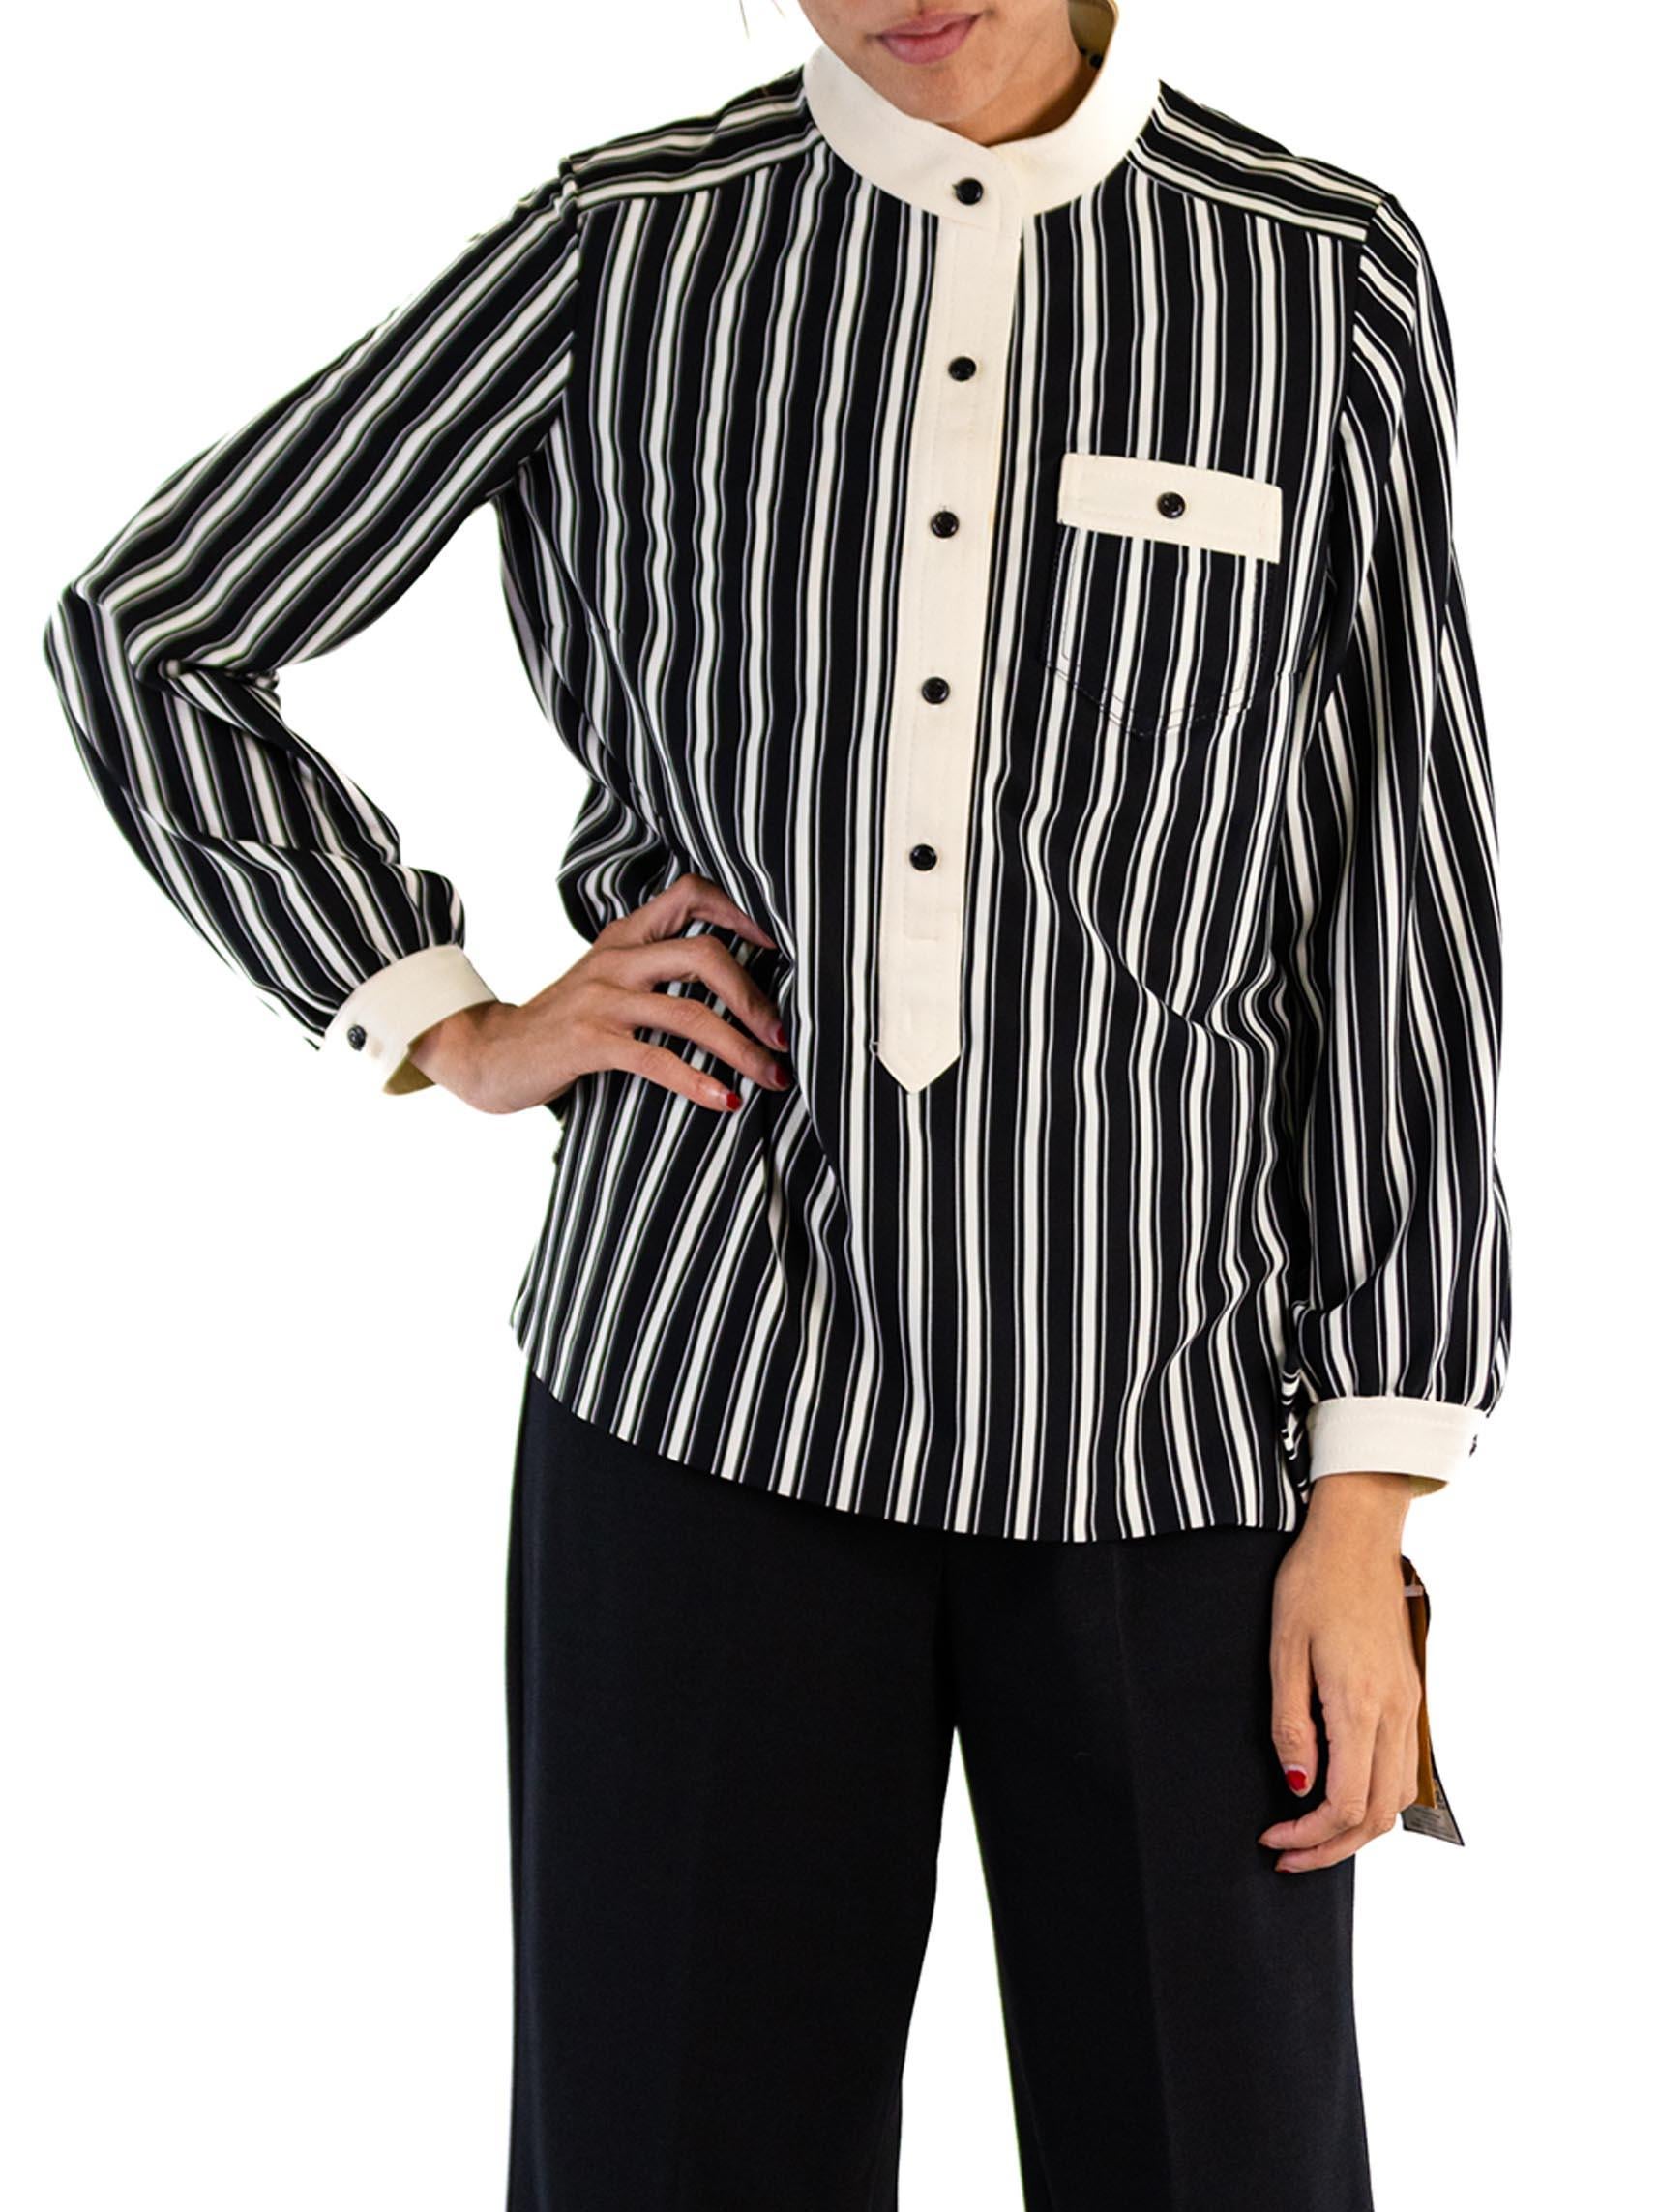 Women's 1960S Black & White Striped Polyester Double Knit Mod Shirt Pant Ensemble For Sale